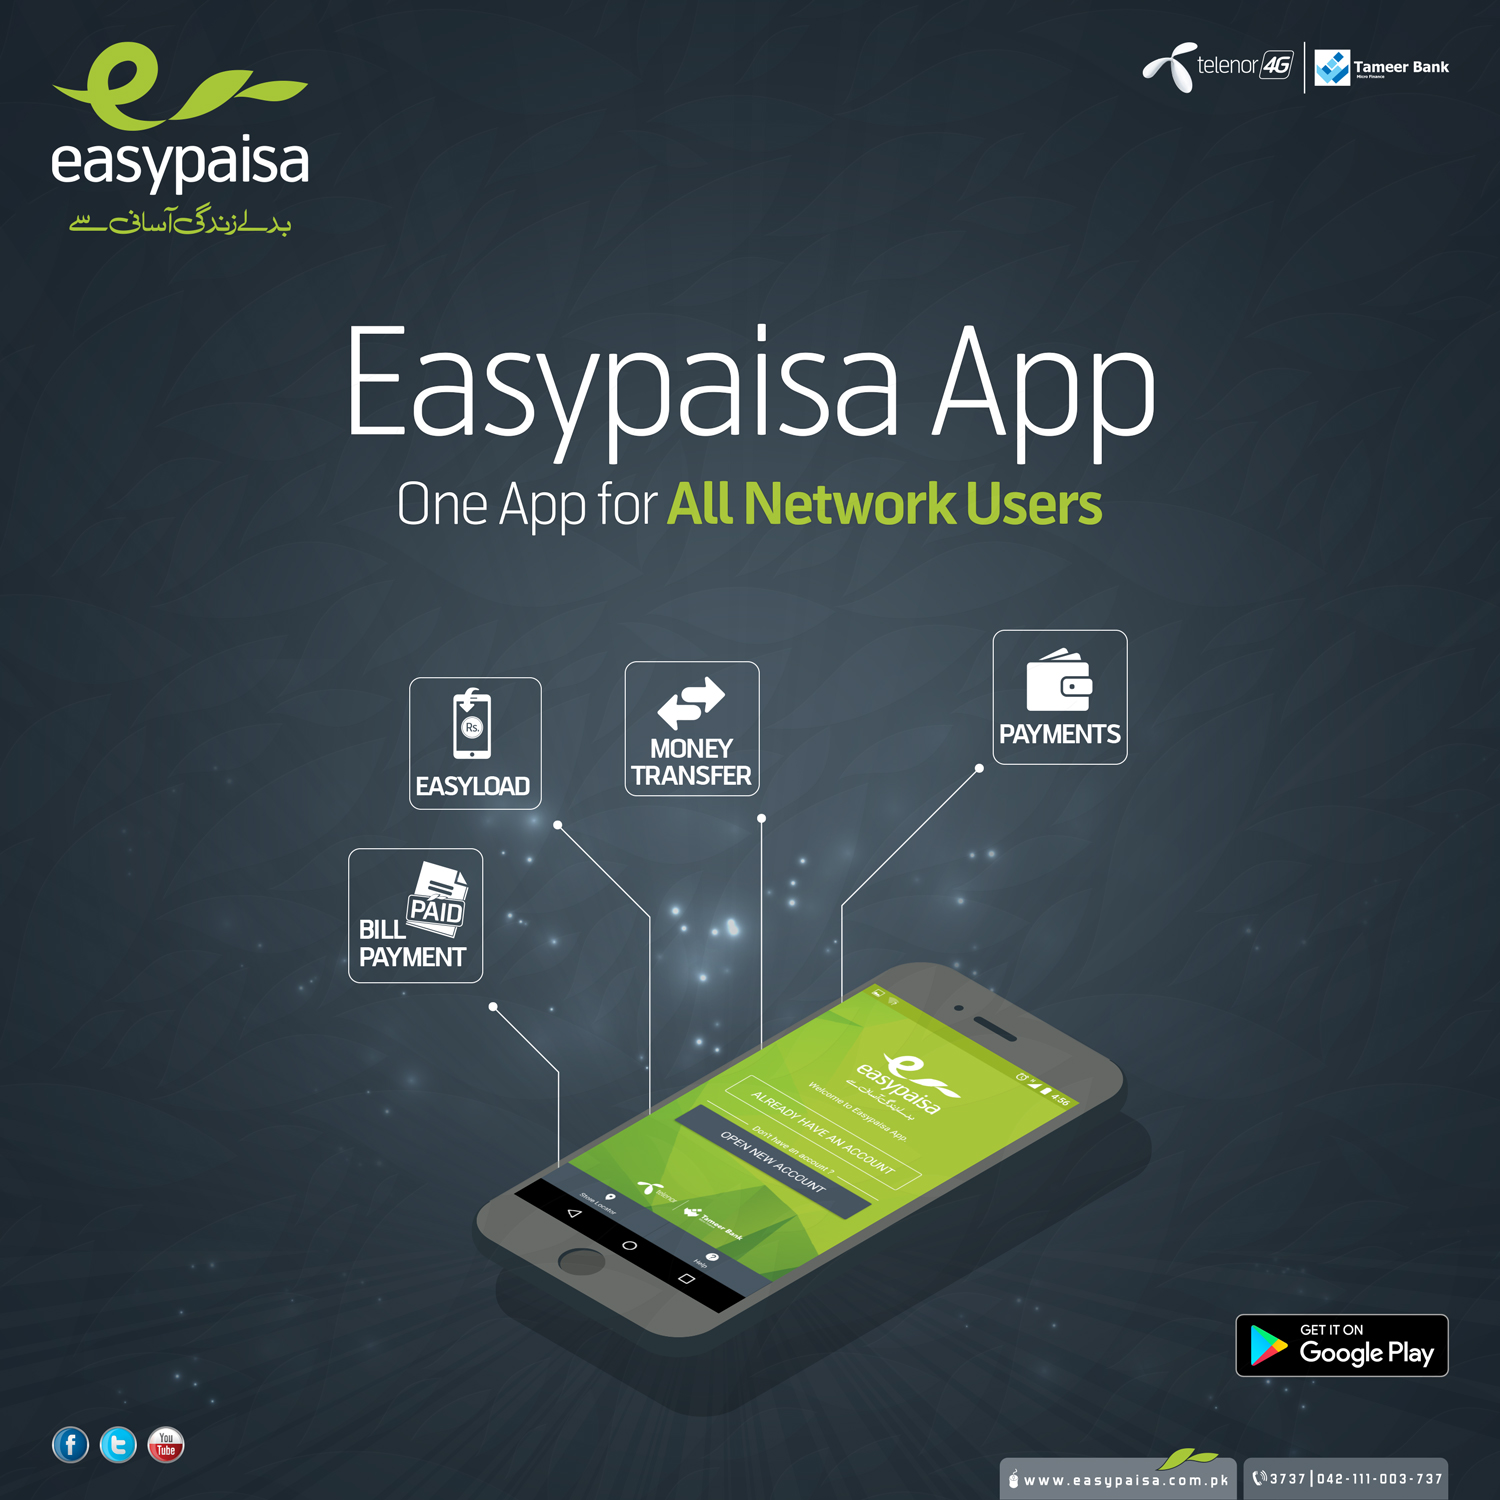 easypaisa-app-post